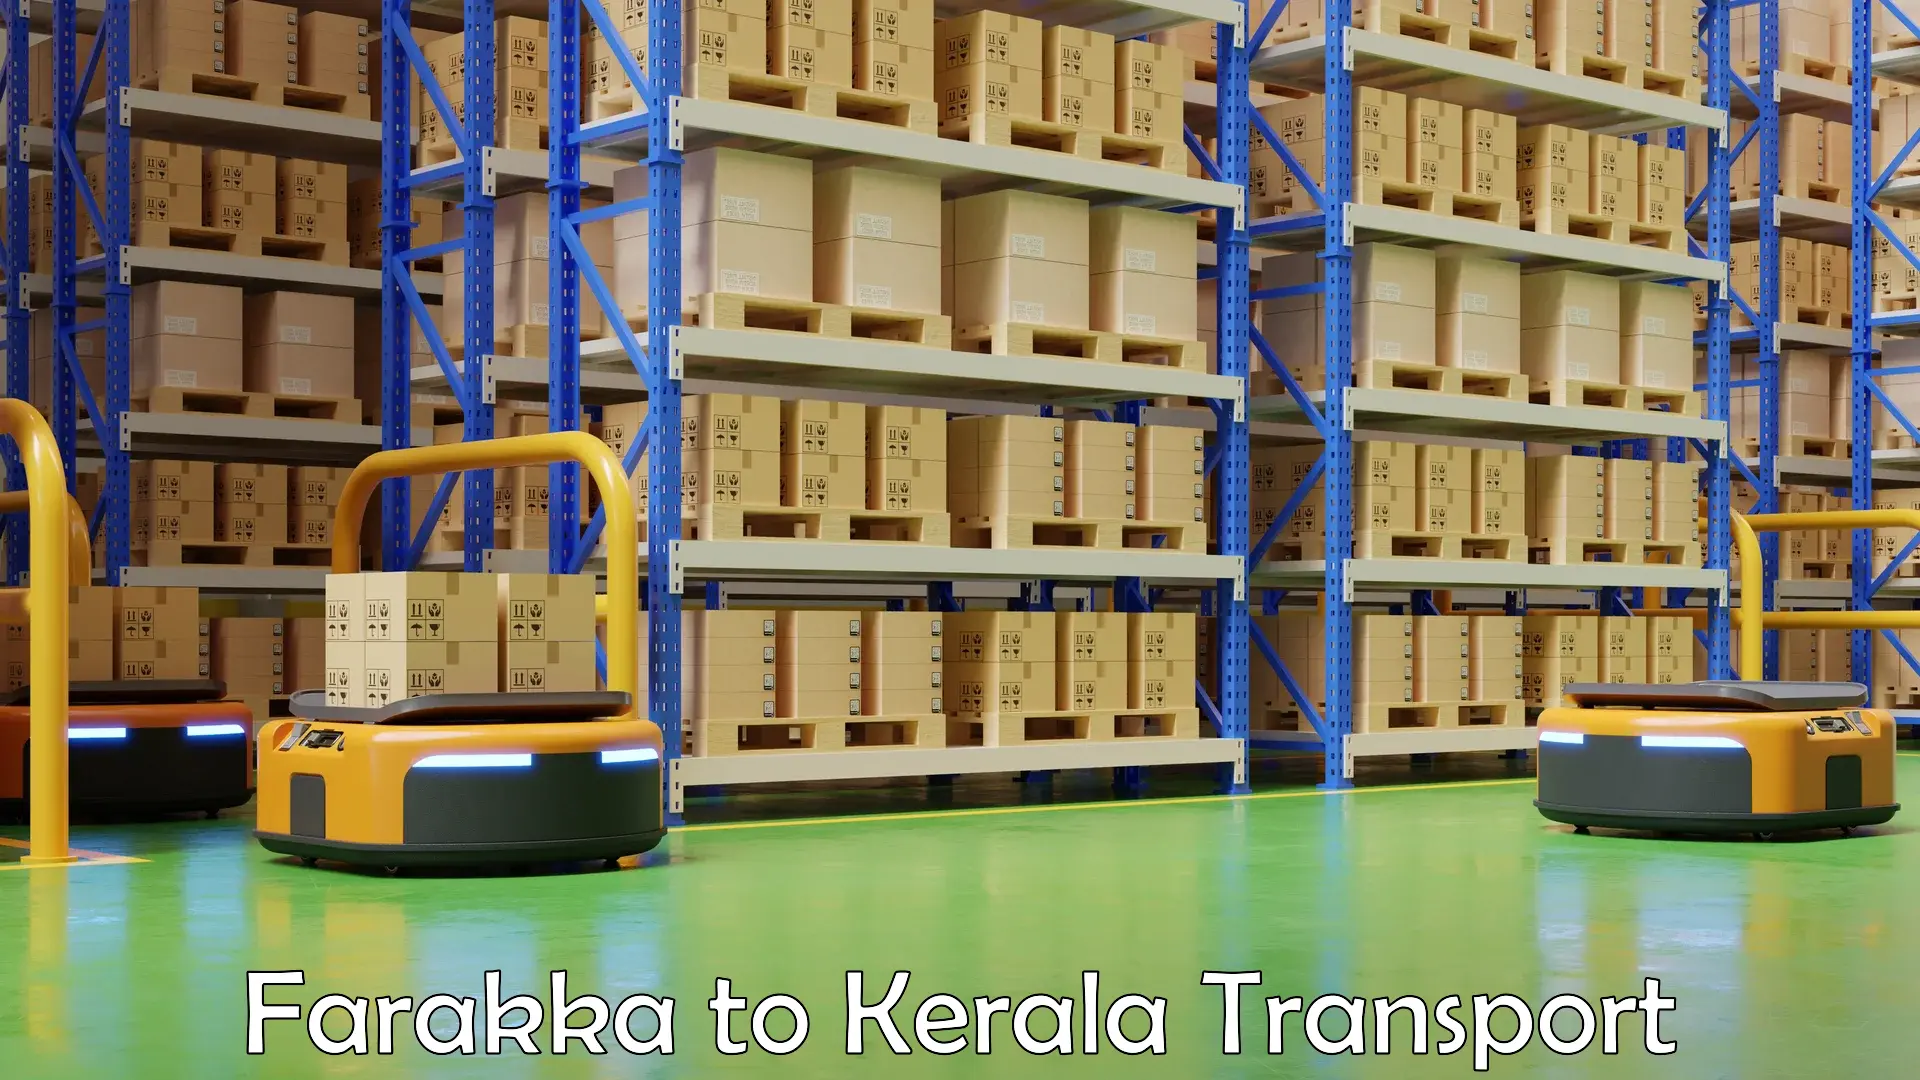 Daily transport service Farakka to Kerala